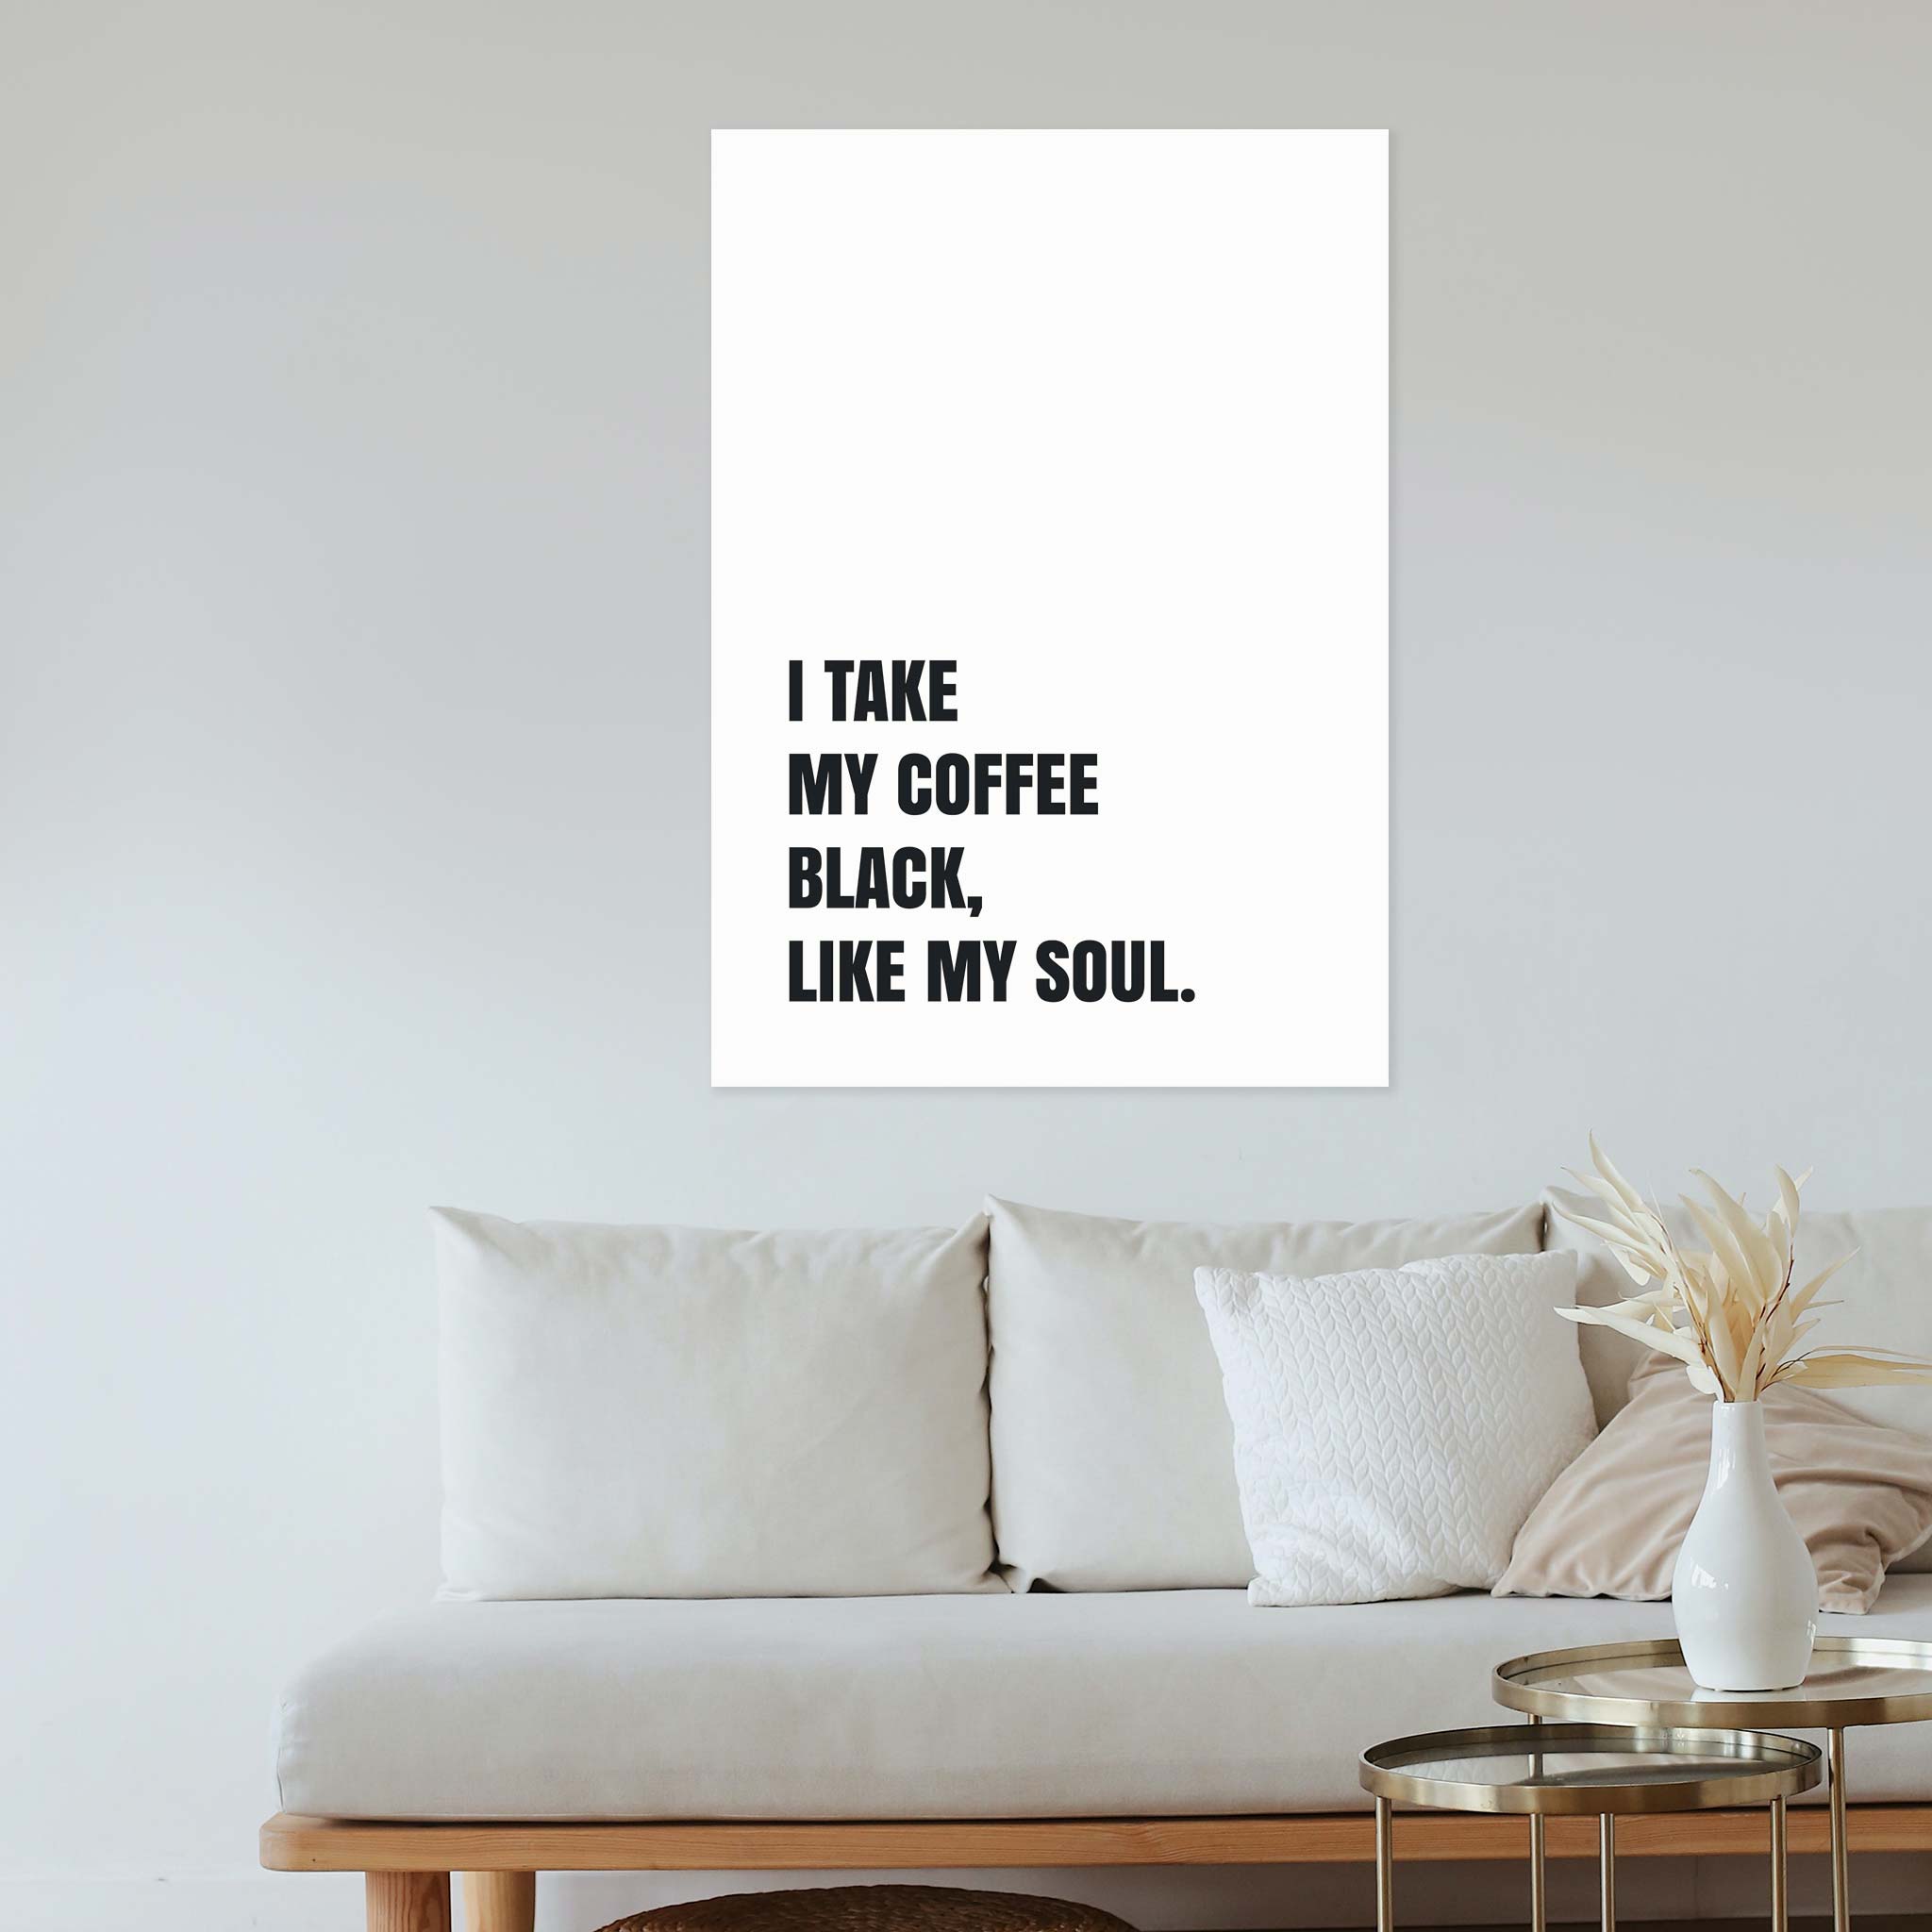 I take my coffee black, like my soul